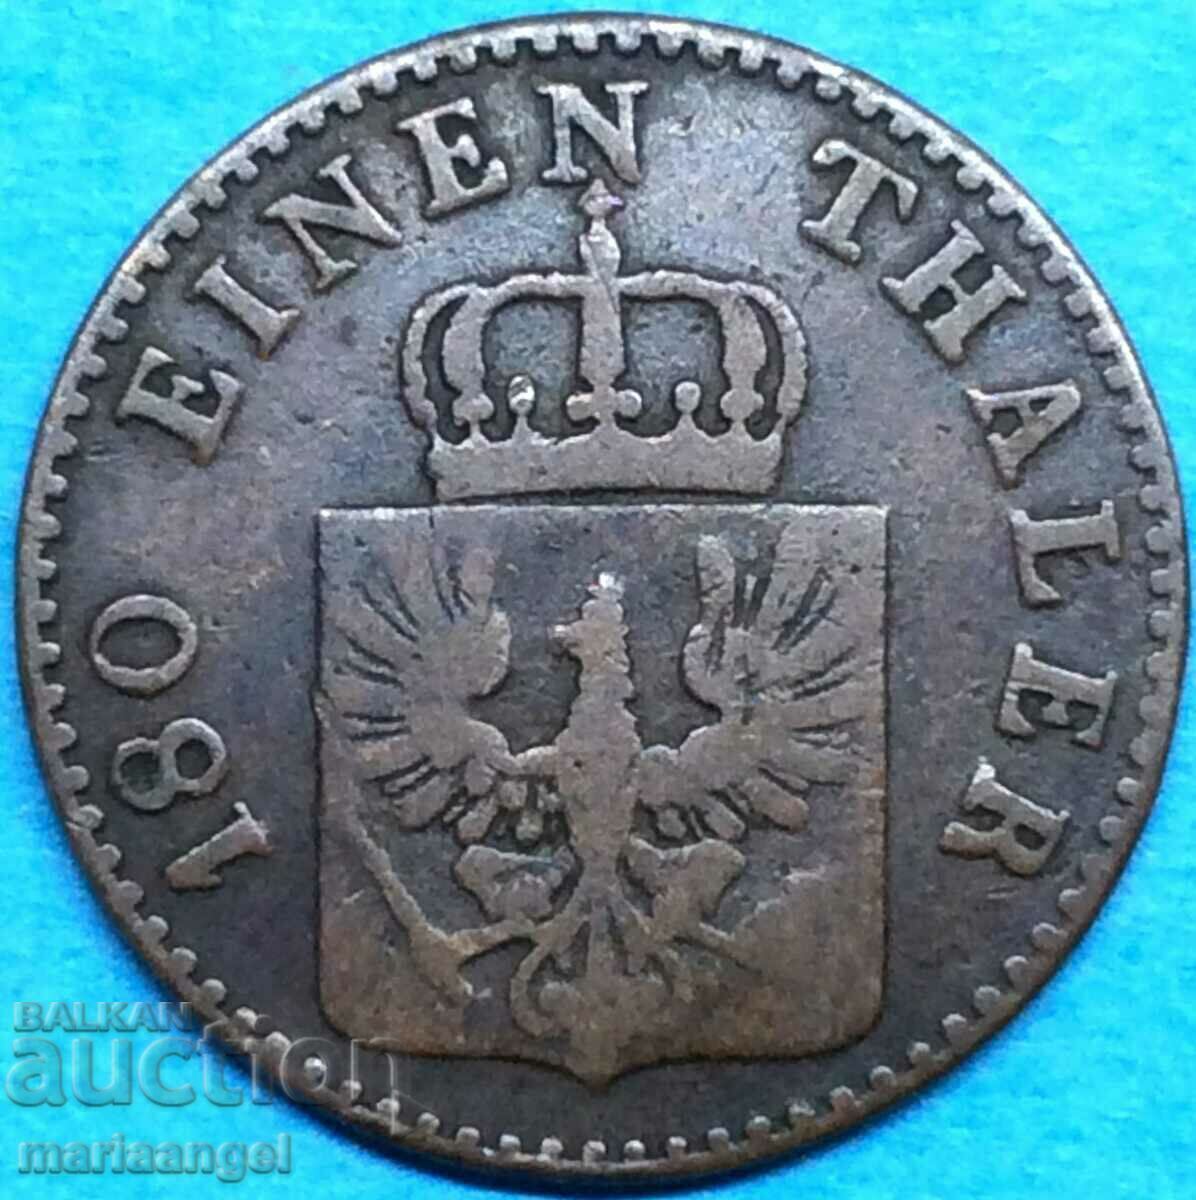 2 pfennig 1853 "A" - Berlin Prussia Germany